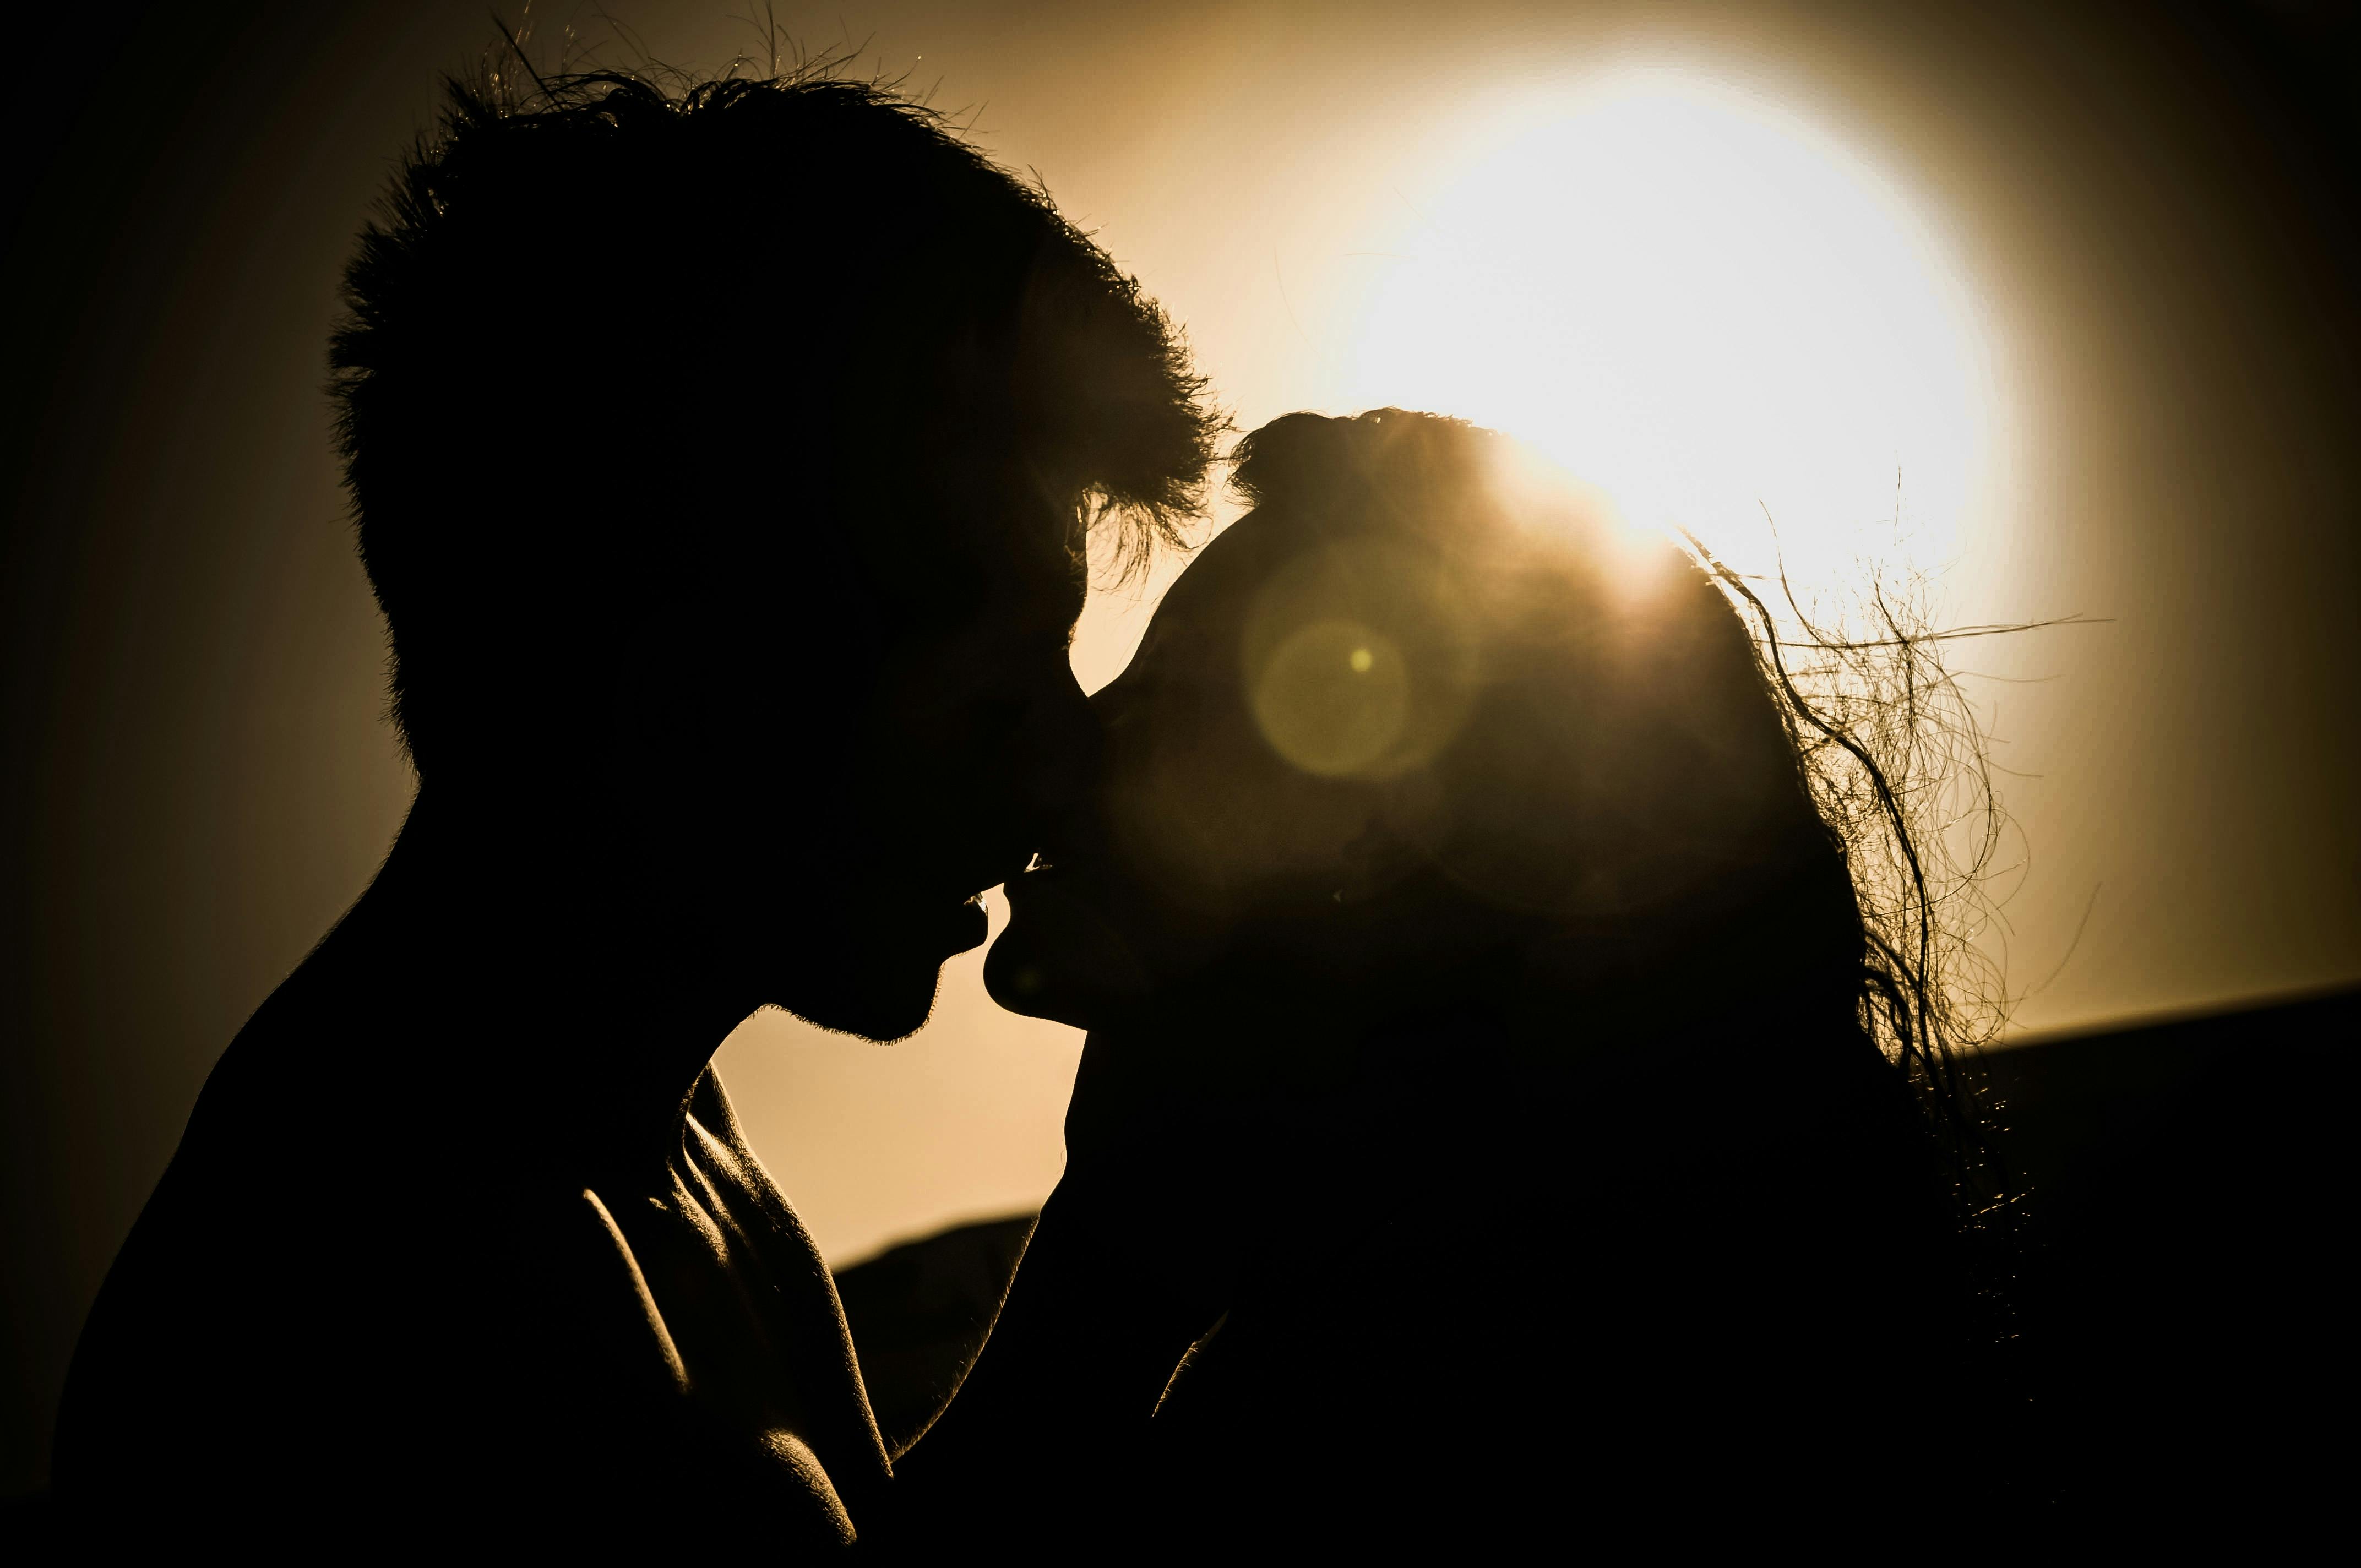 Hình nền tình yêu ngọt ngào và lãng mạn cho các cặp đôi - Fptshop.com.vn